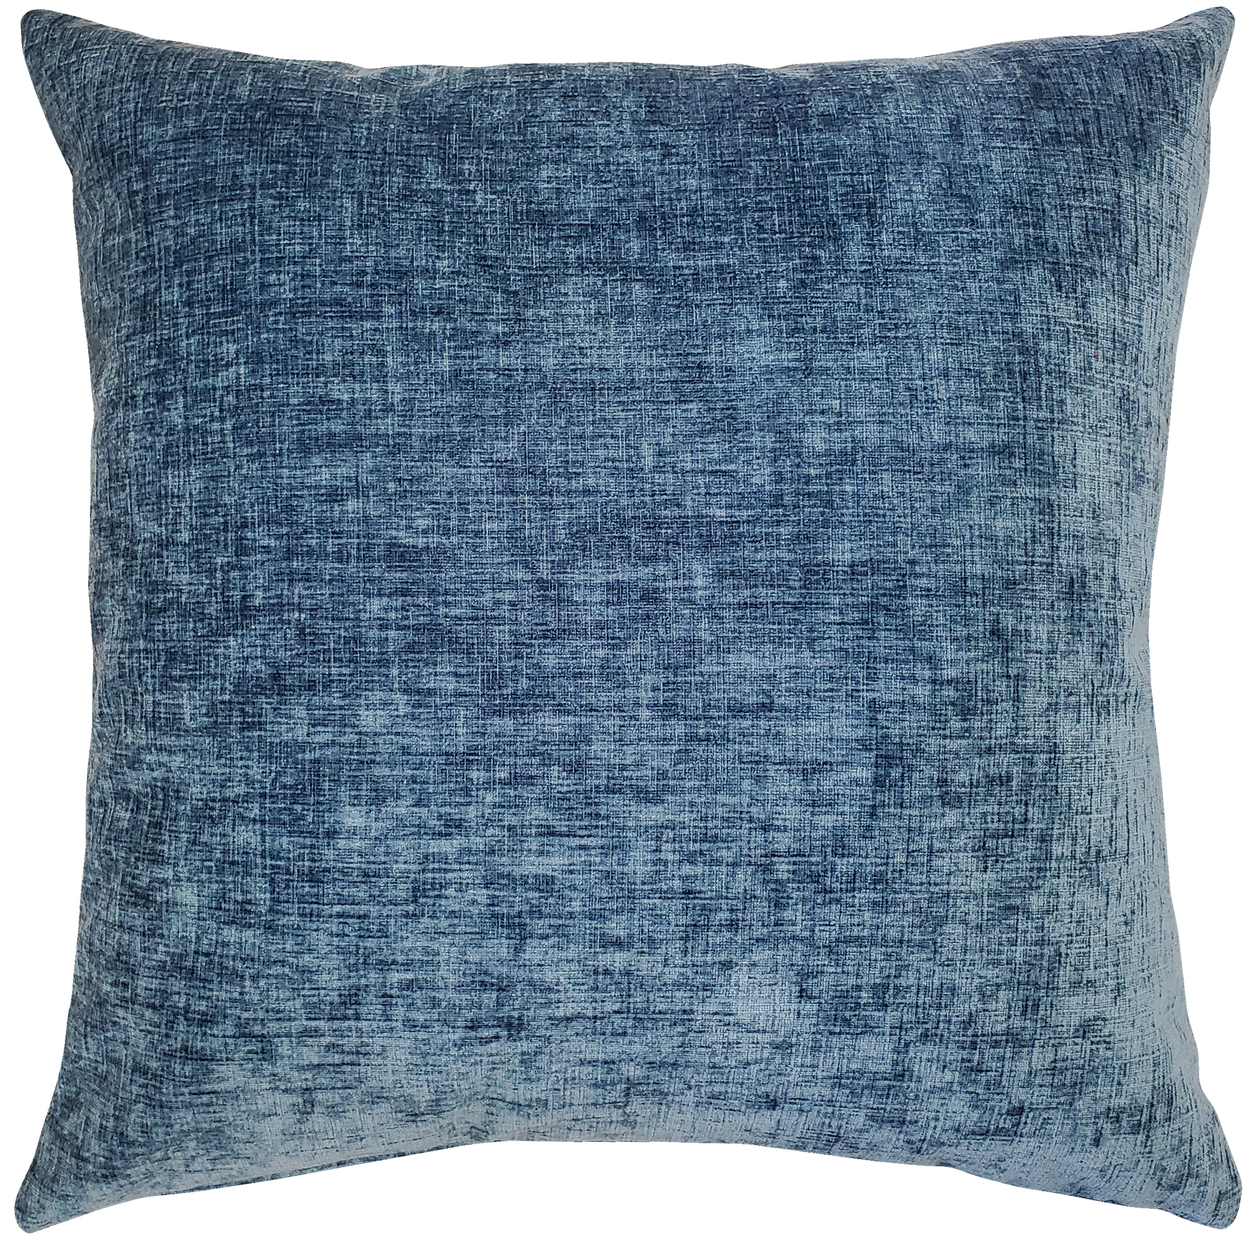 Venetian Velvet Agean Blue Throw Pillow 17x17, With Polyfill Insert